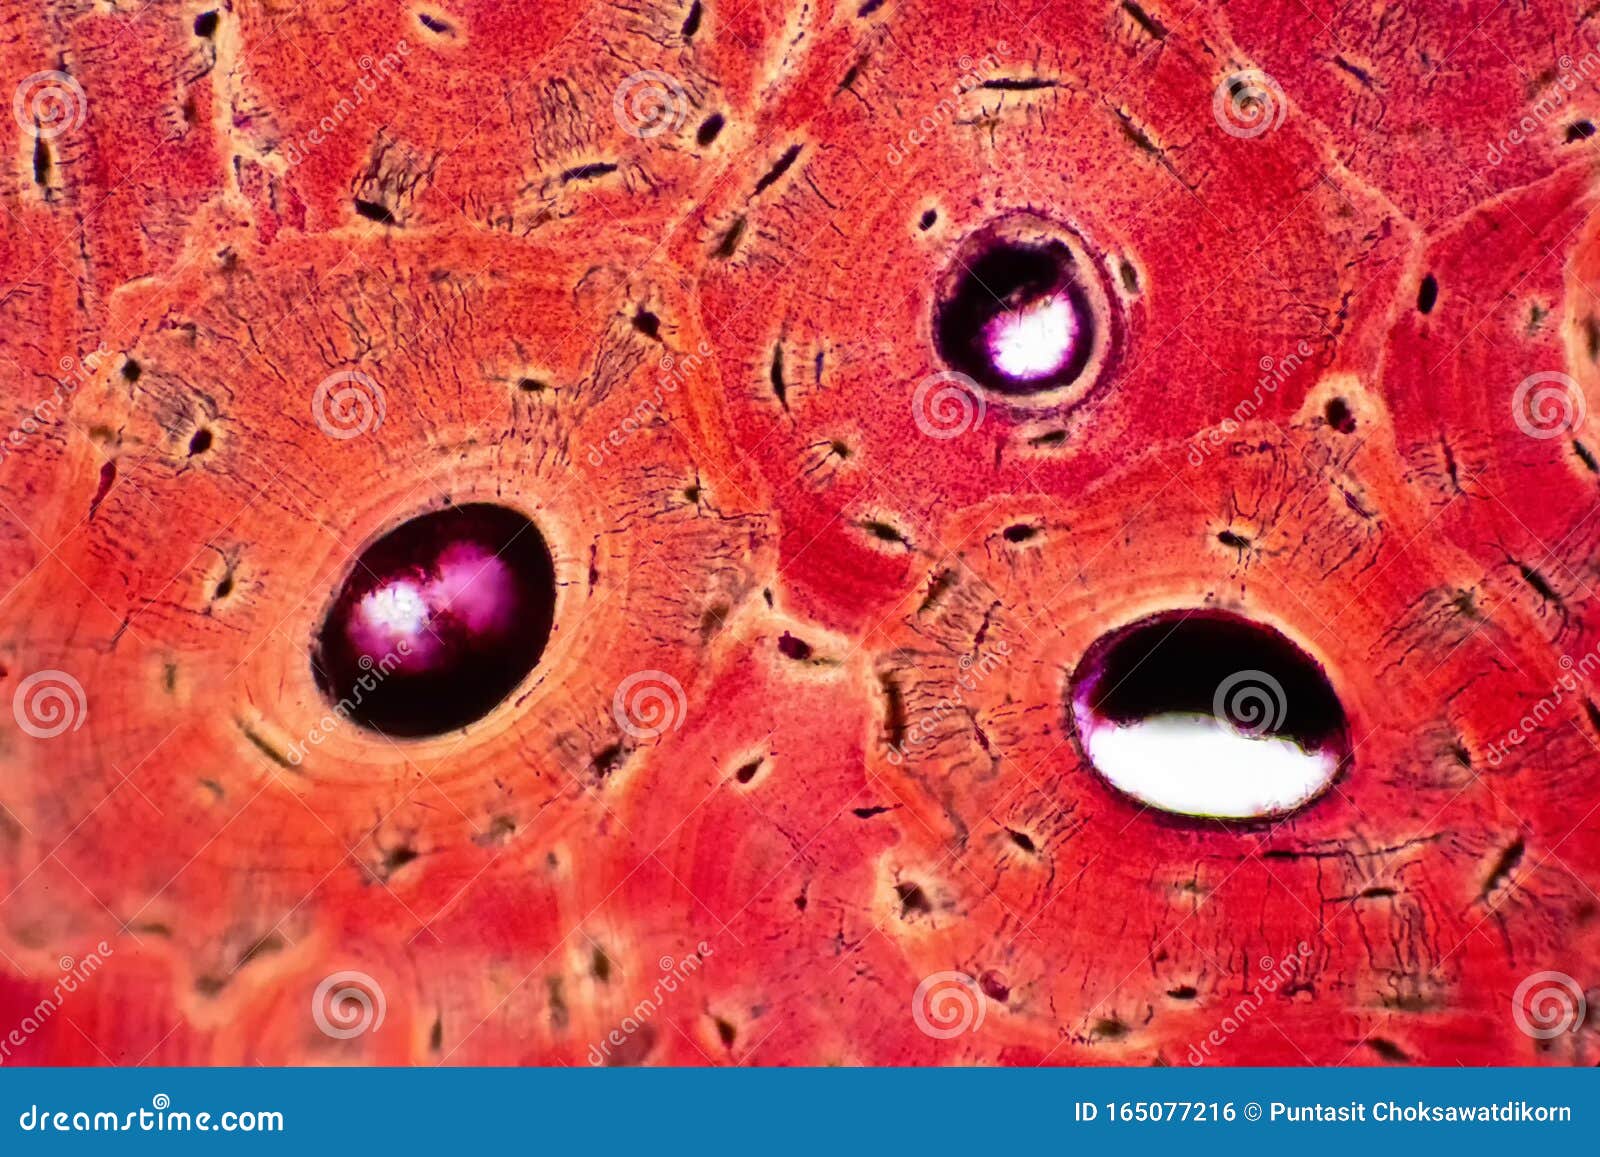 Плотное образование внутри клетки. Соединительная ткань под микроскопом. Ткани человека под микроскопом. Человеческие ткани под микроскопом. Соединительная ткань фото под микроскопом.